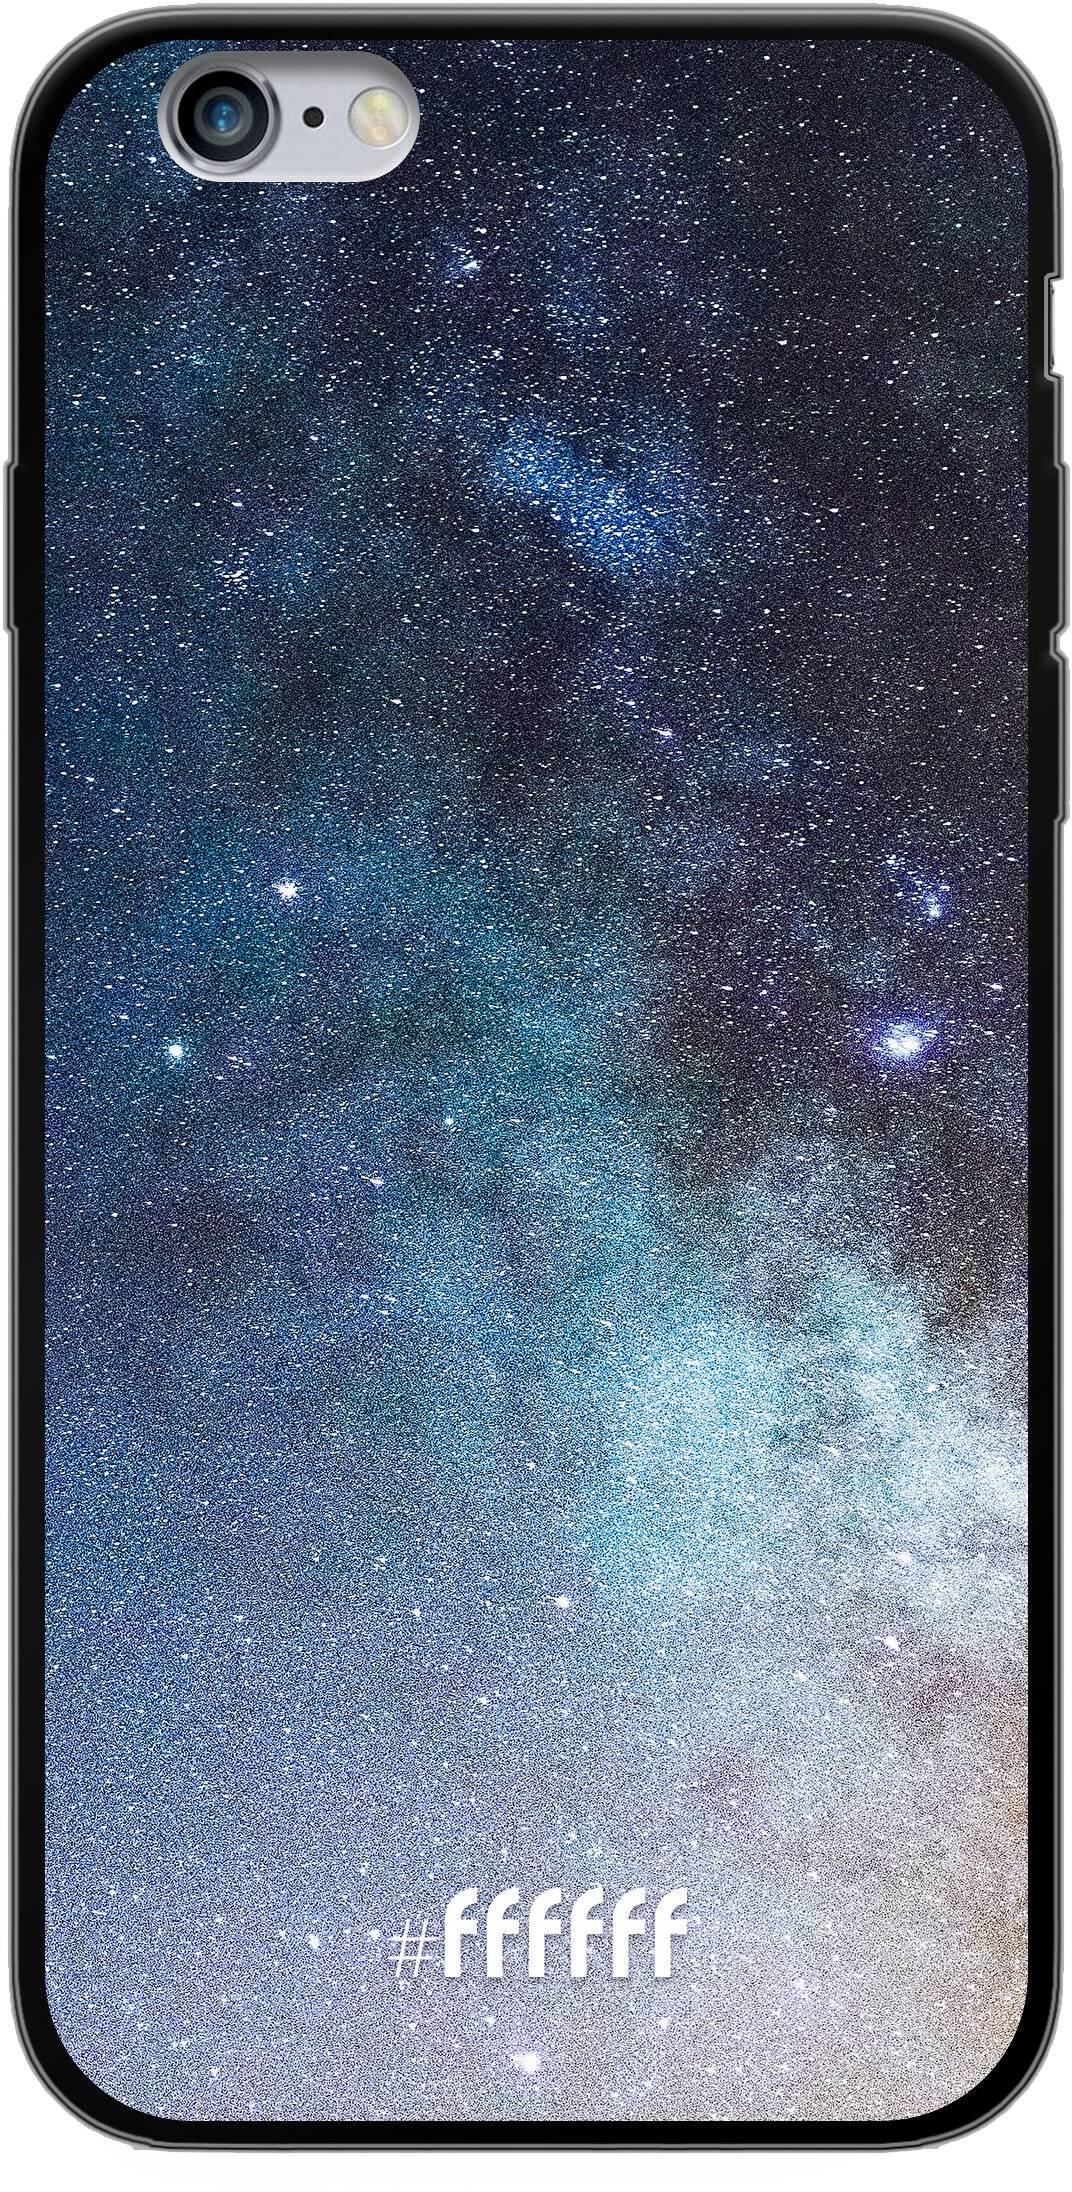 Milky Way iPhone 6s